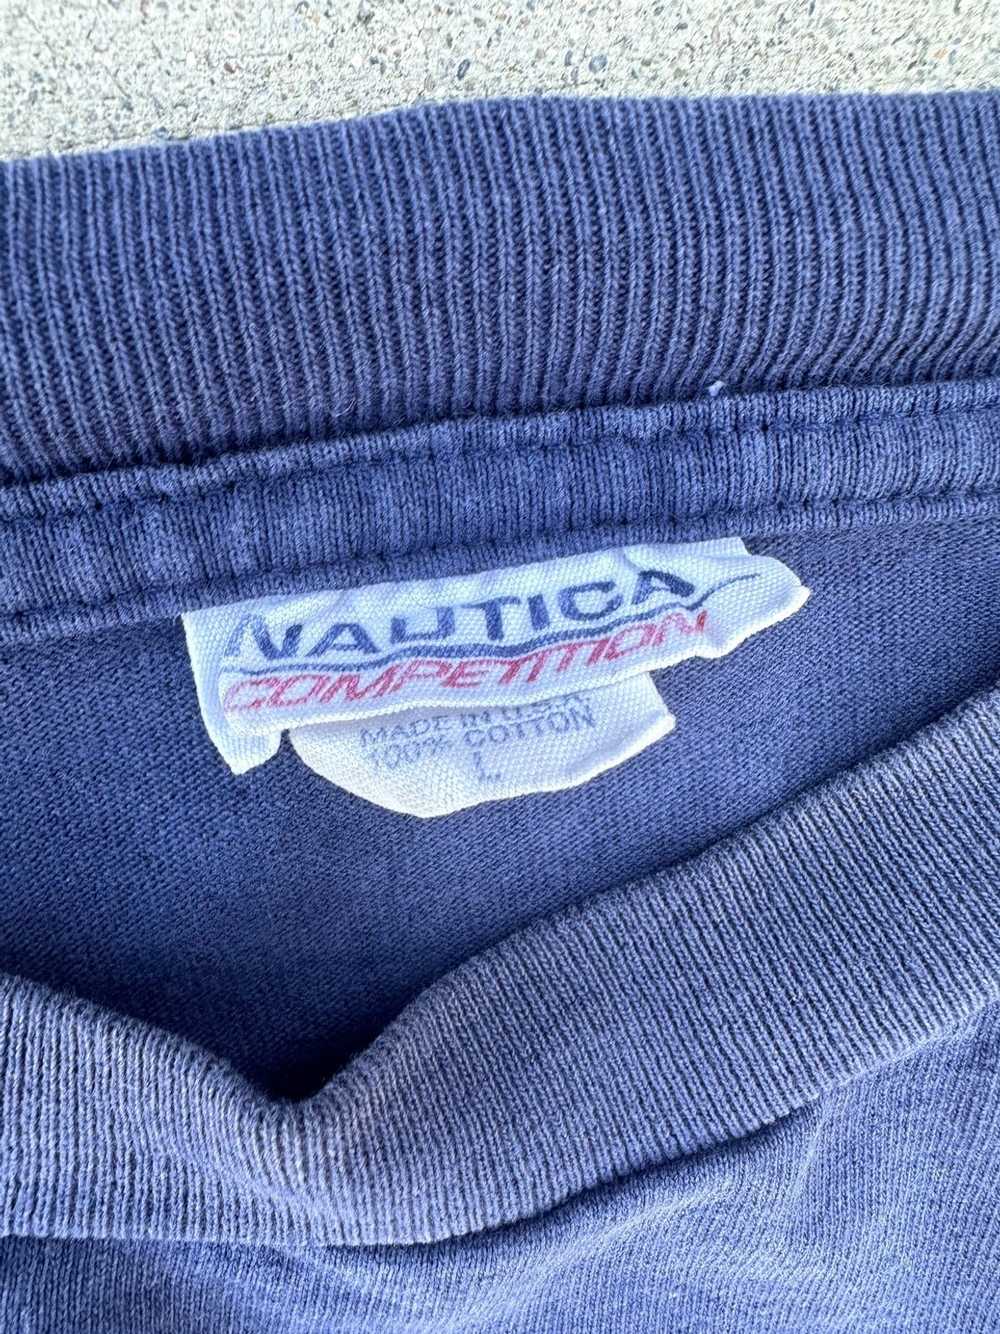 Nautica × Vintage Vintage Nautica Tee Shirt Large… - image 10